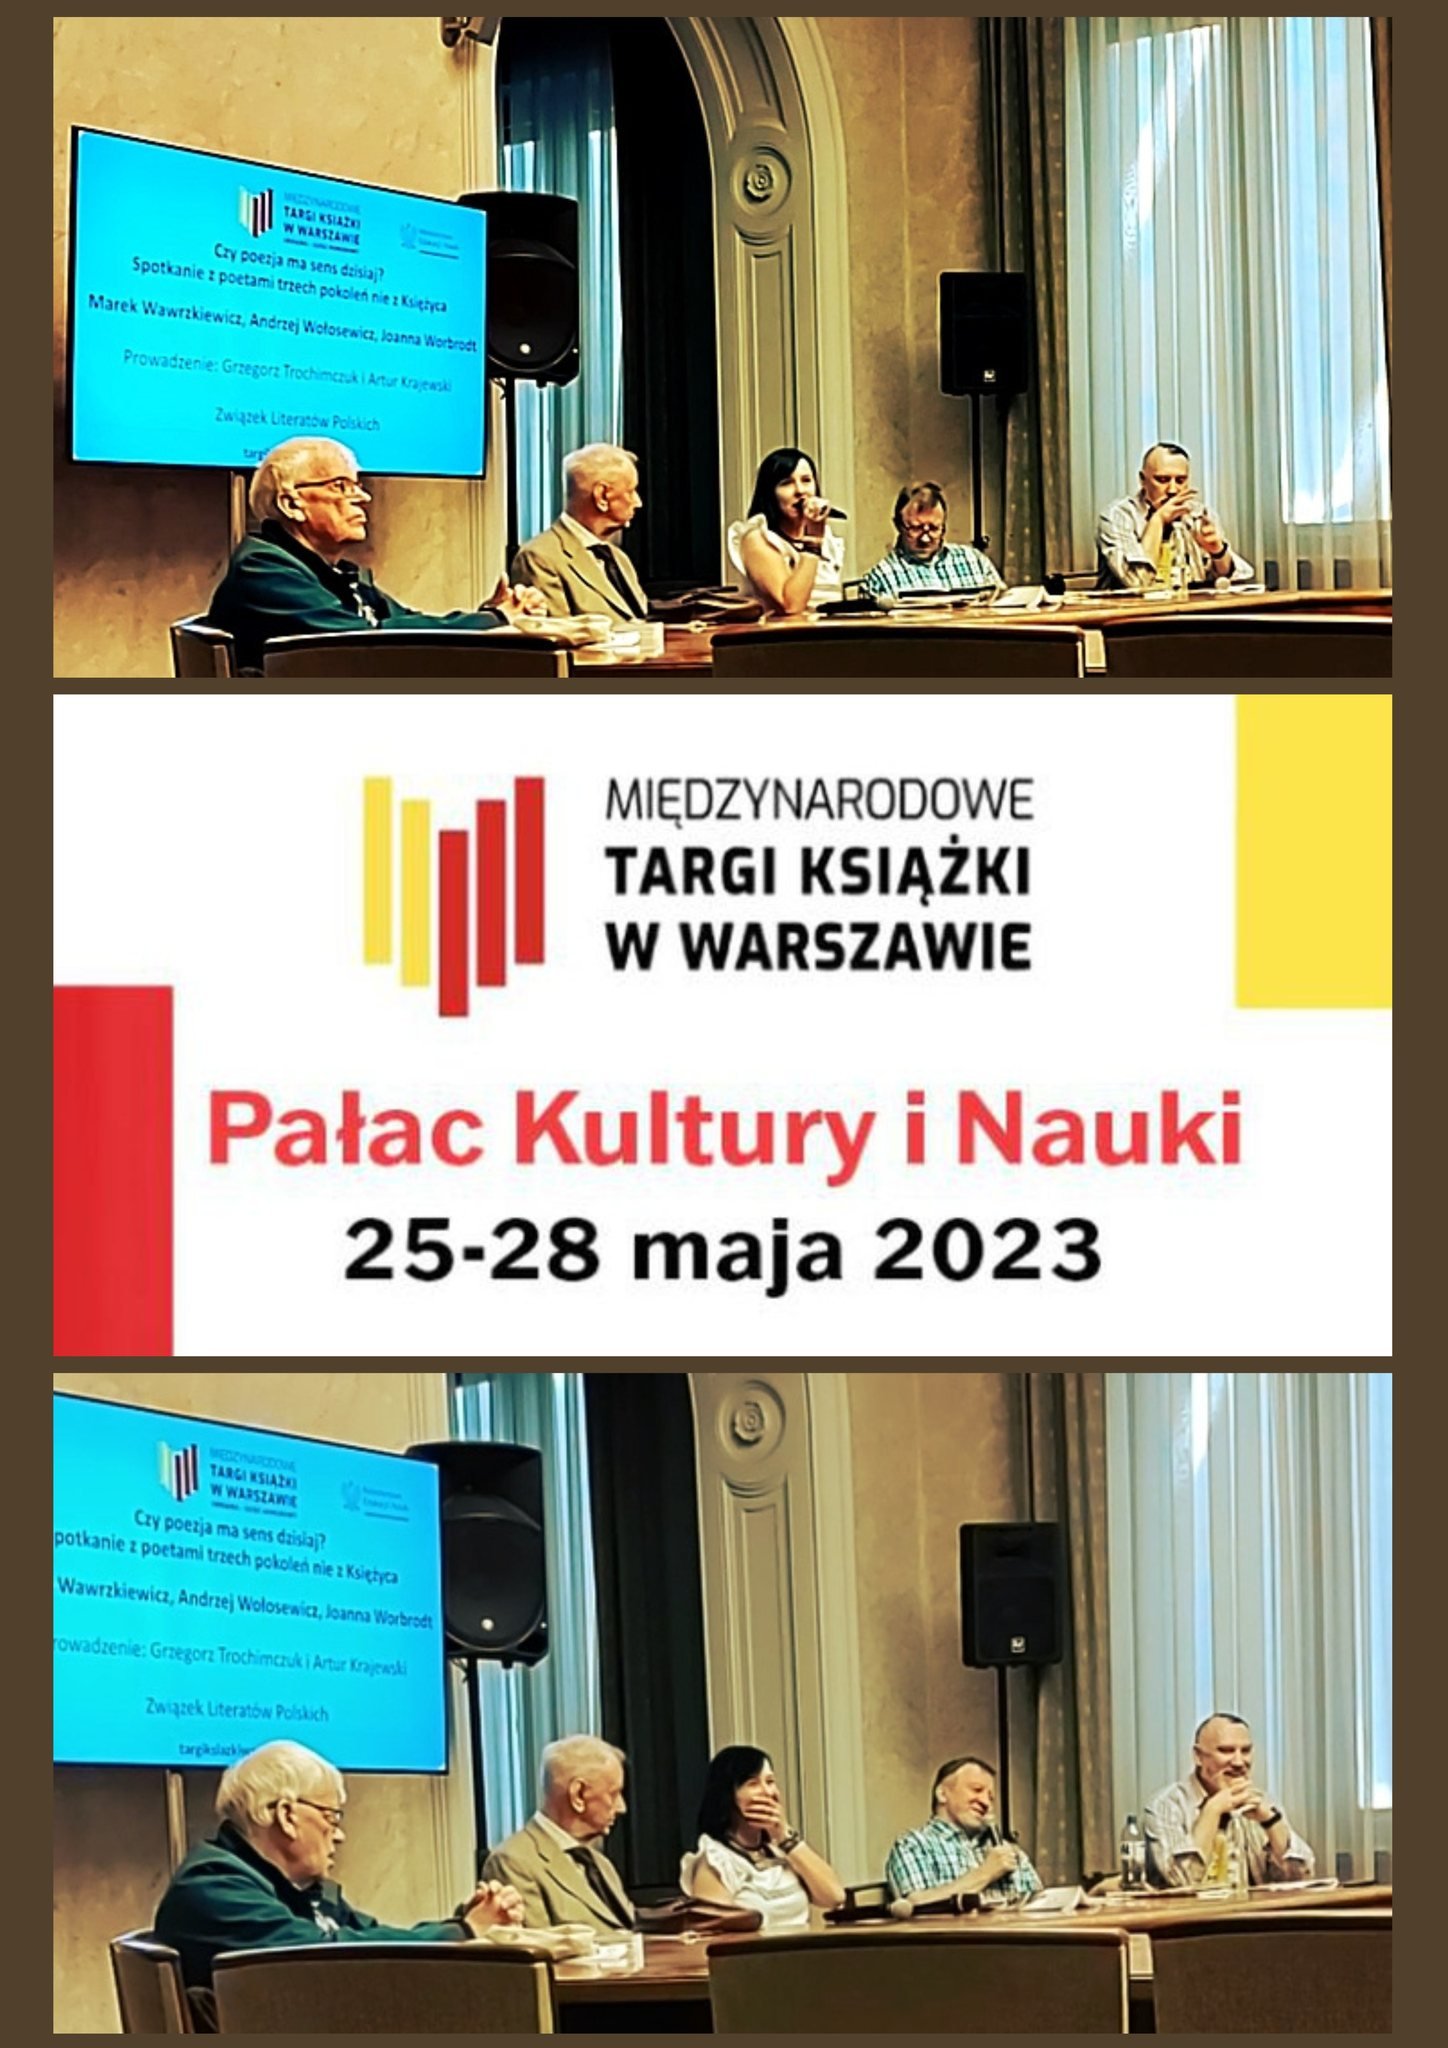 Spotkanie z poetami trzech pokoleń na Międzynarodowych Targach Książki w Warszawie